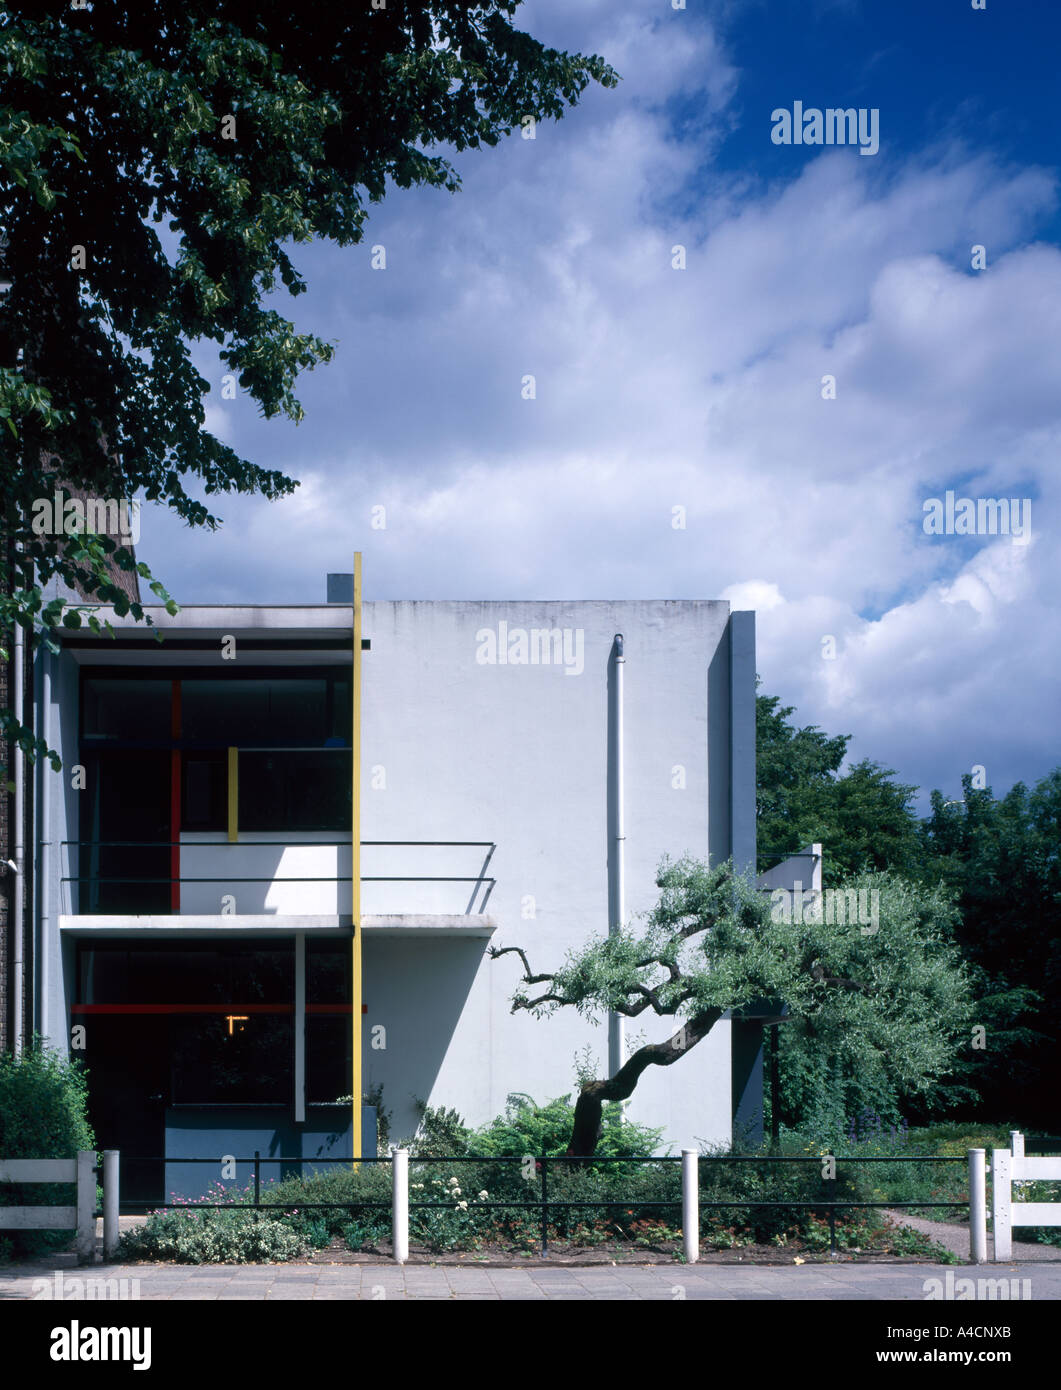 Schroder house immagini e fotografie stock ad alta risoluzione - Alamy